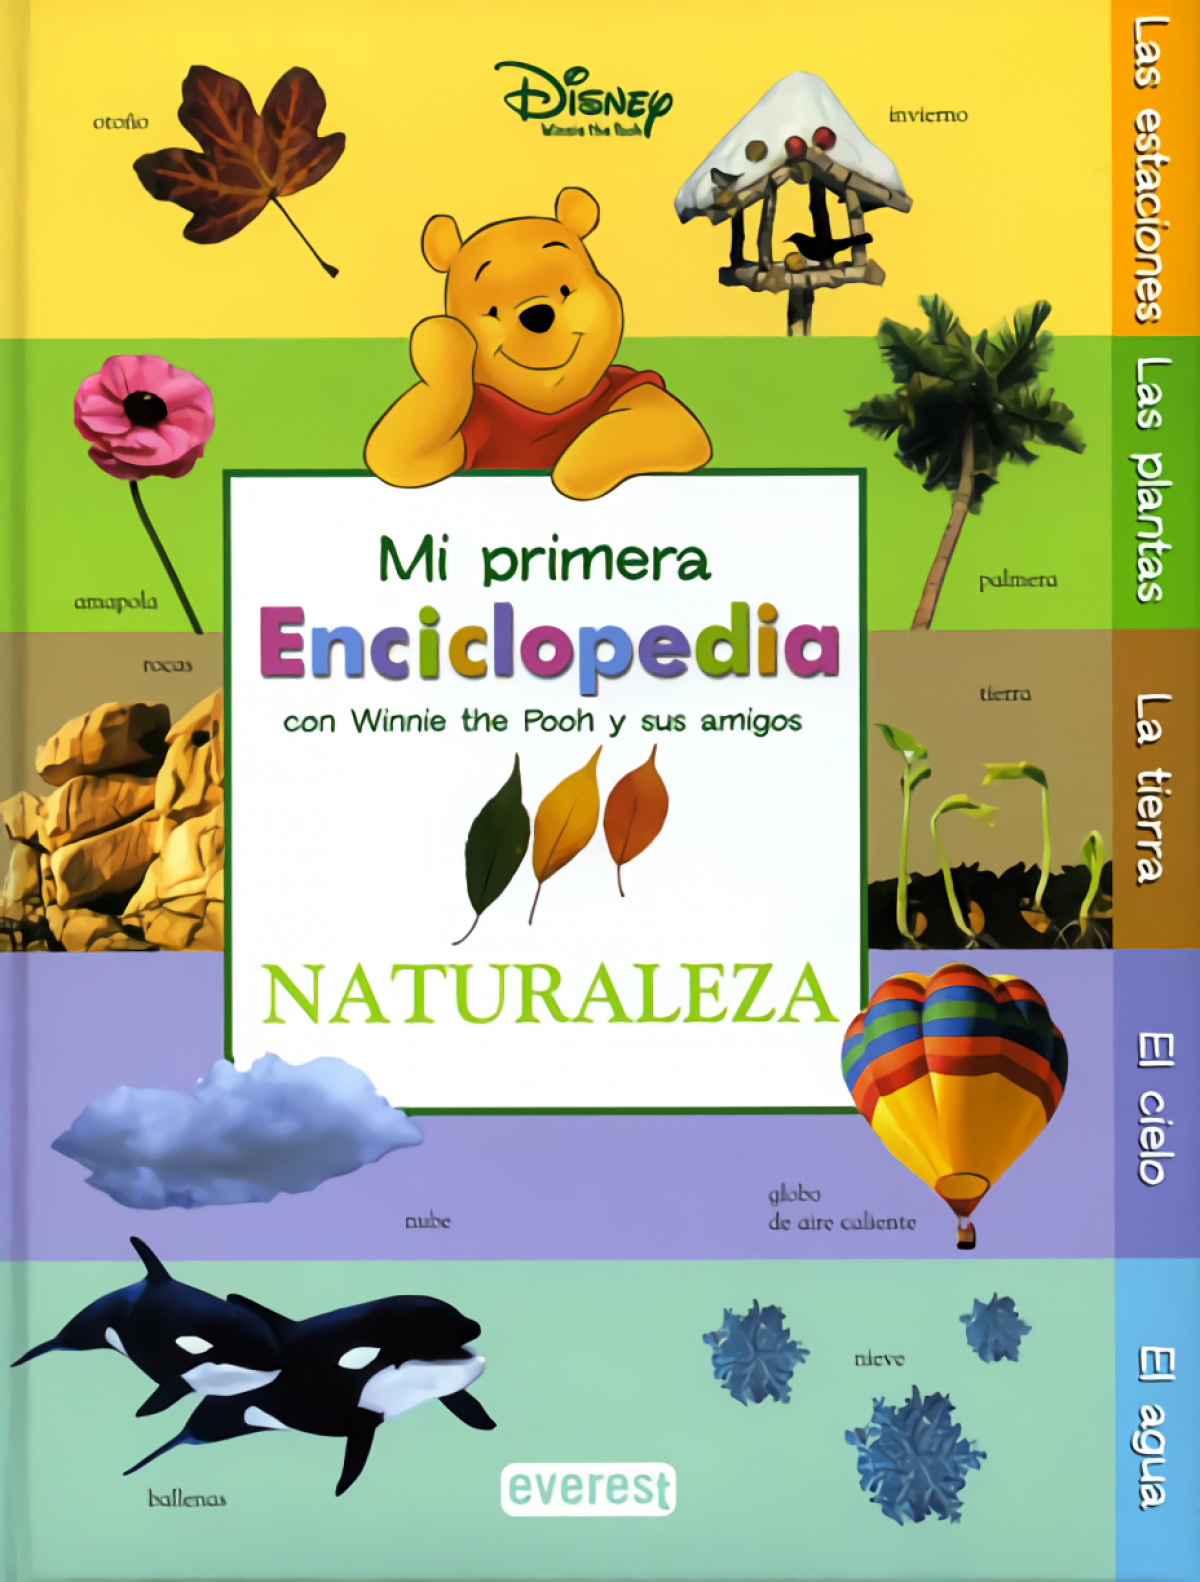 Mi Primera Enciclopedia con Winnie The Pooh y sus amigos. Naturaleza - Walt Disney Company